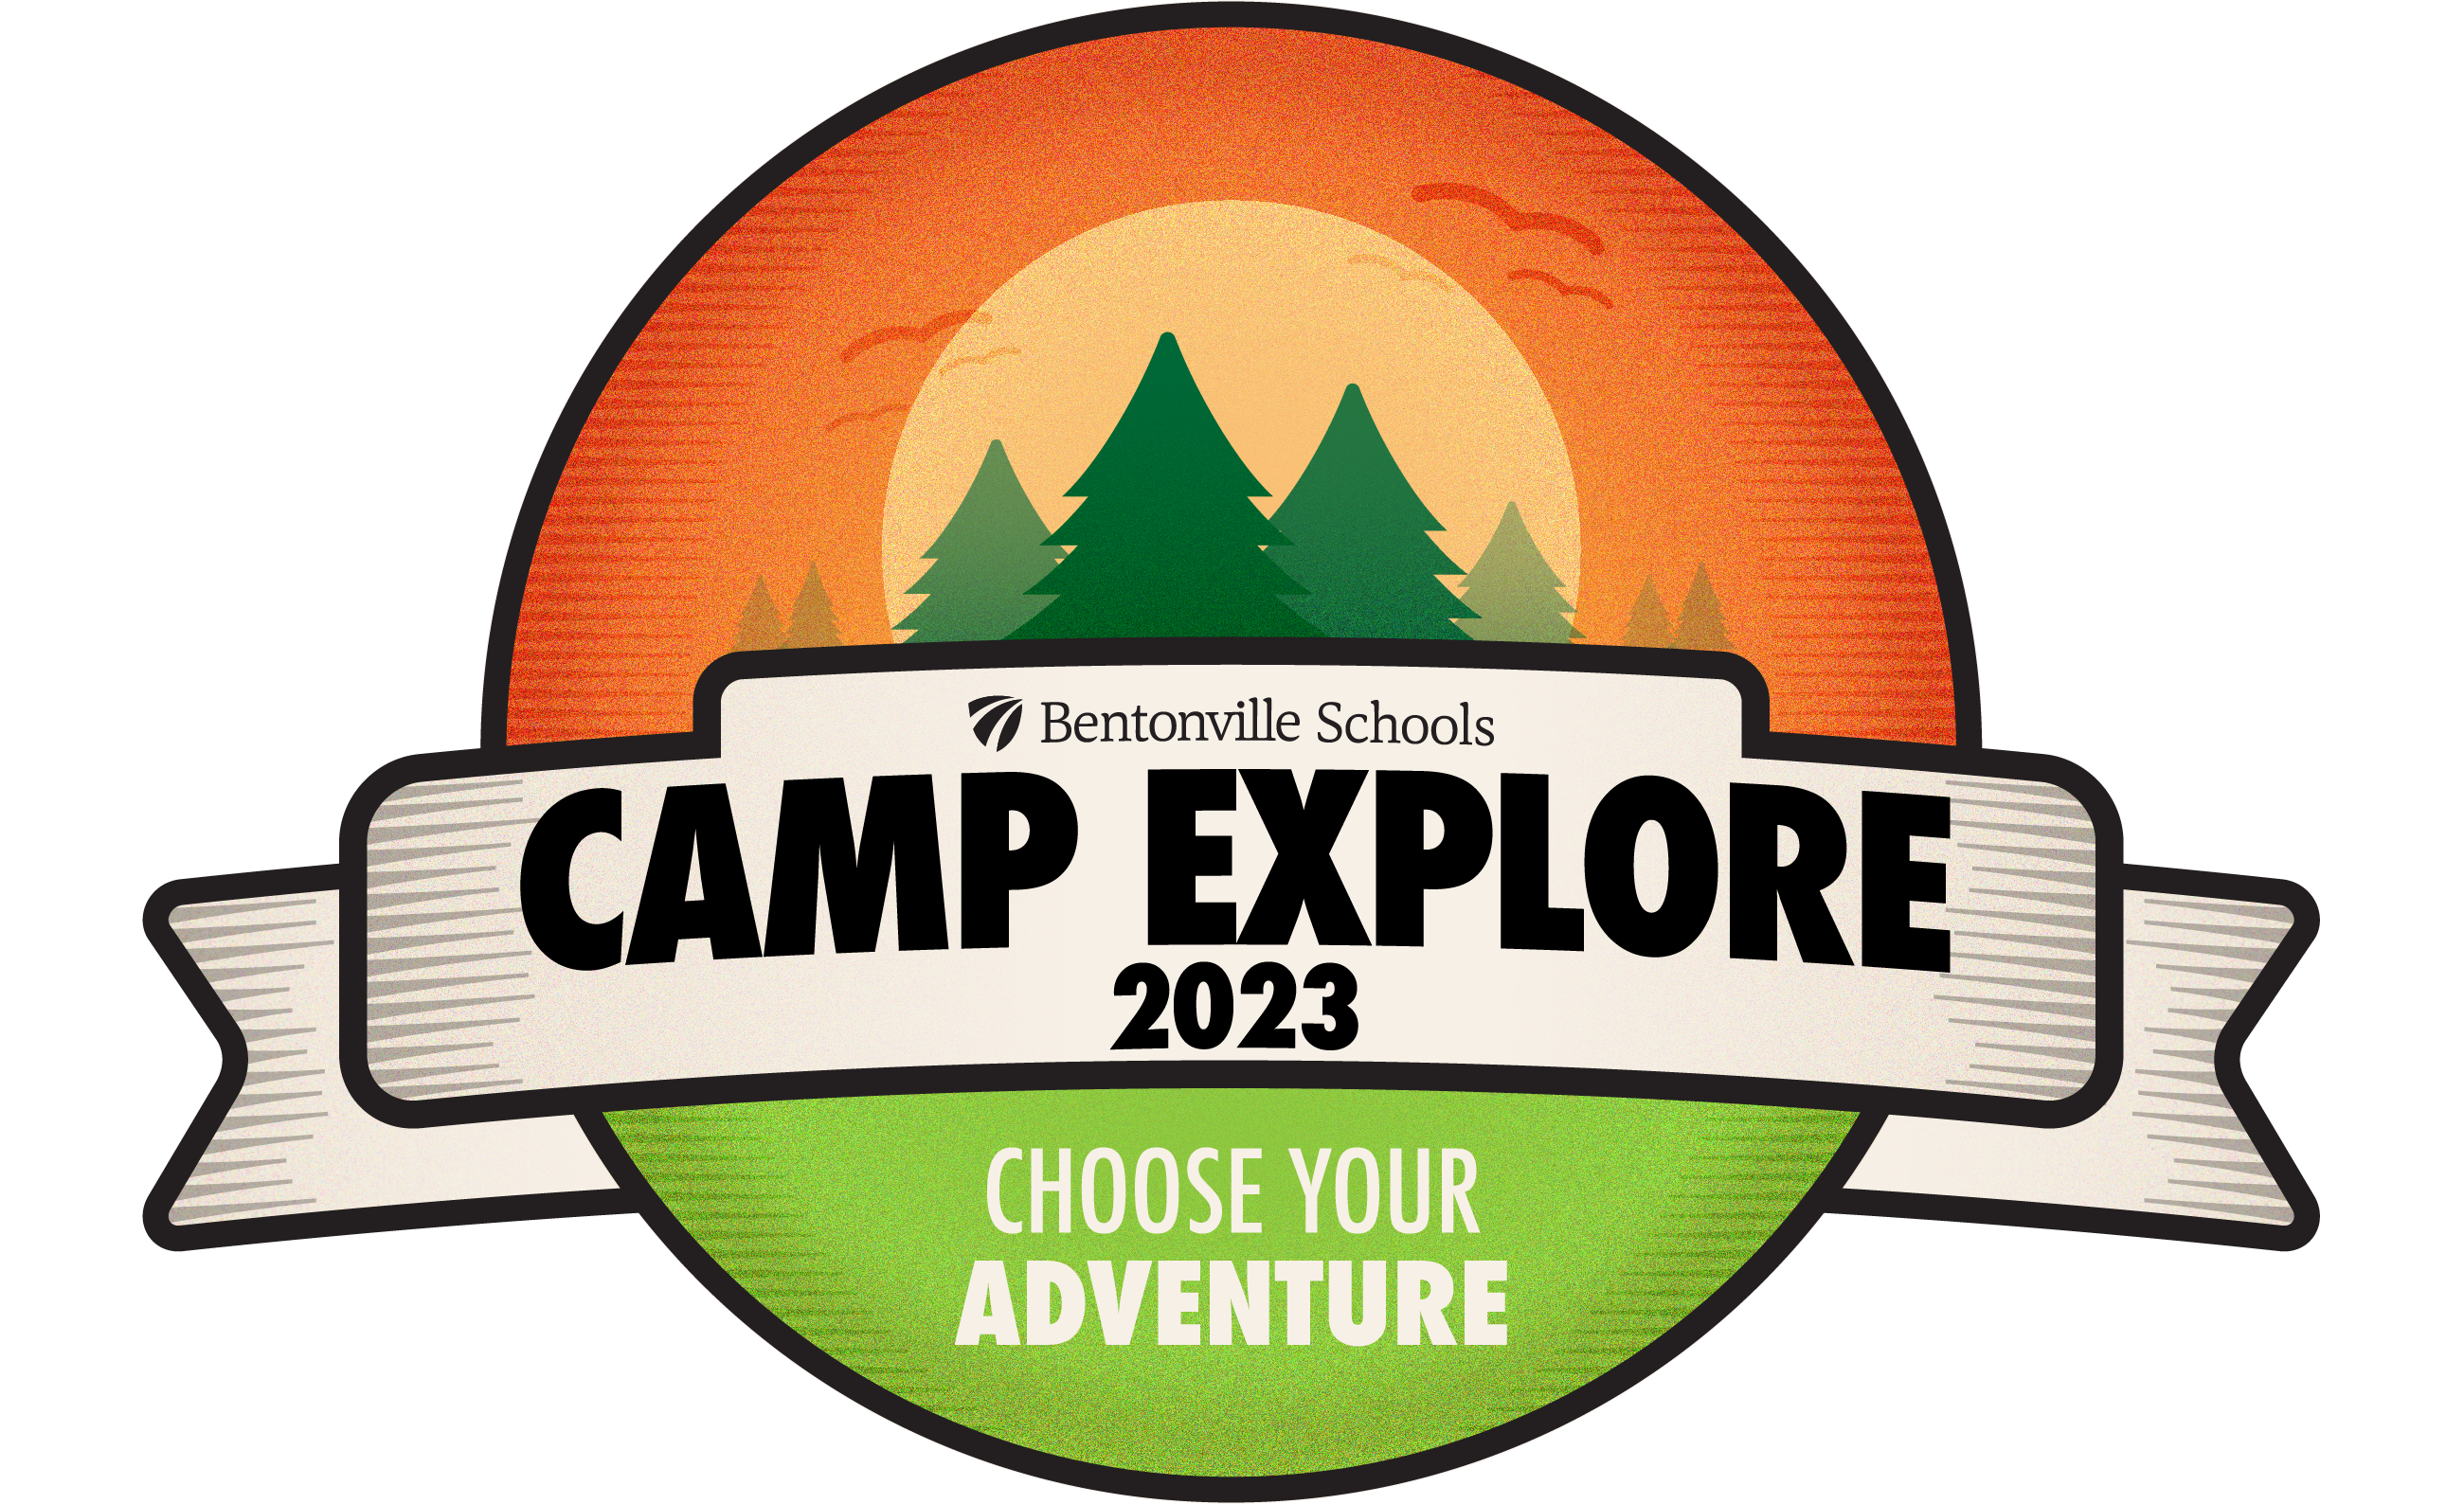 Camp Explore 2023